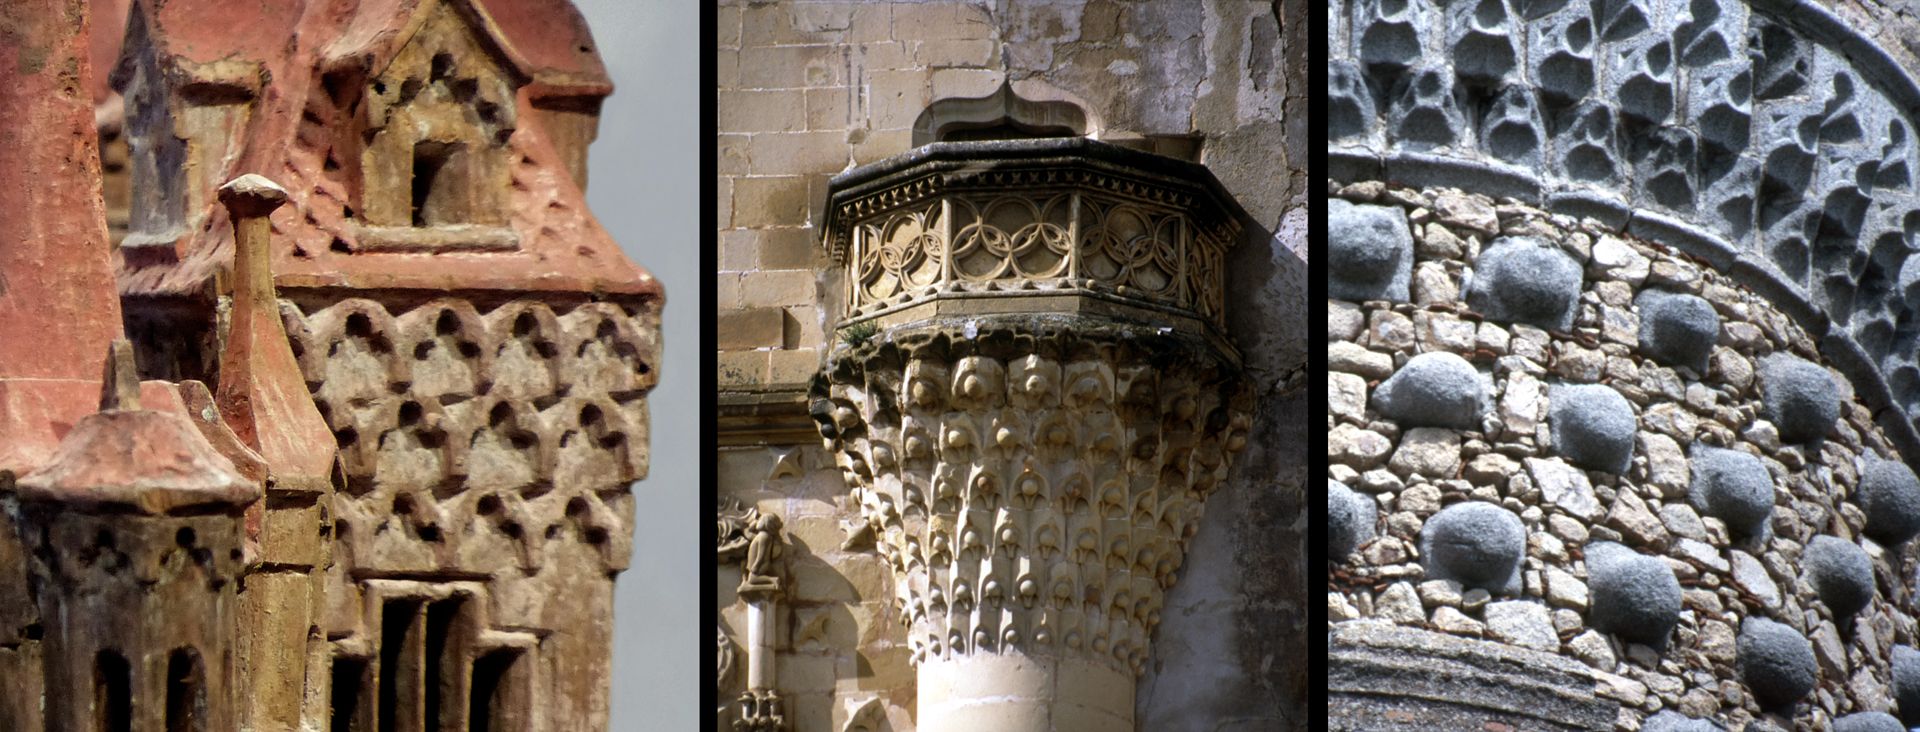 Modell einer Ritterburg Vergleich, Burgmodelldetail, Balkon des Stadtpalastes Jabalquinto in Baeza (dieser zeigt Muqarnas) und Turmdetail in Real de Manzanares